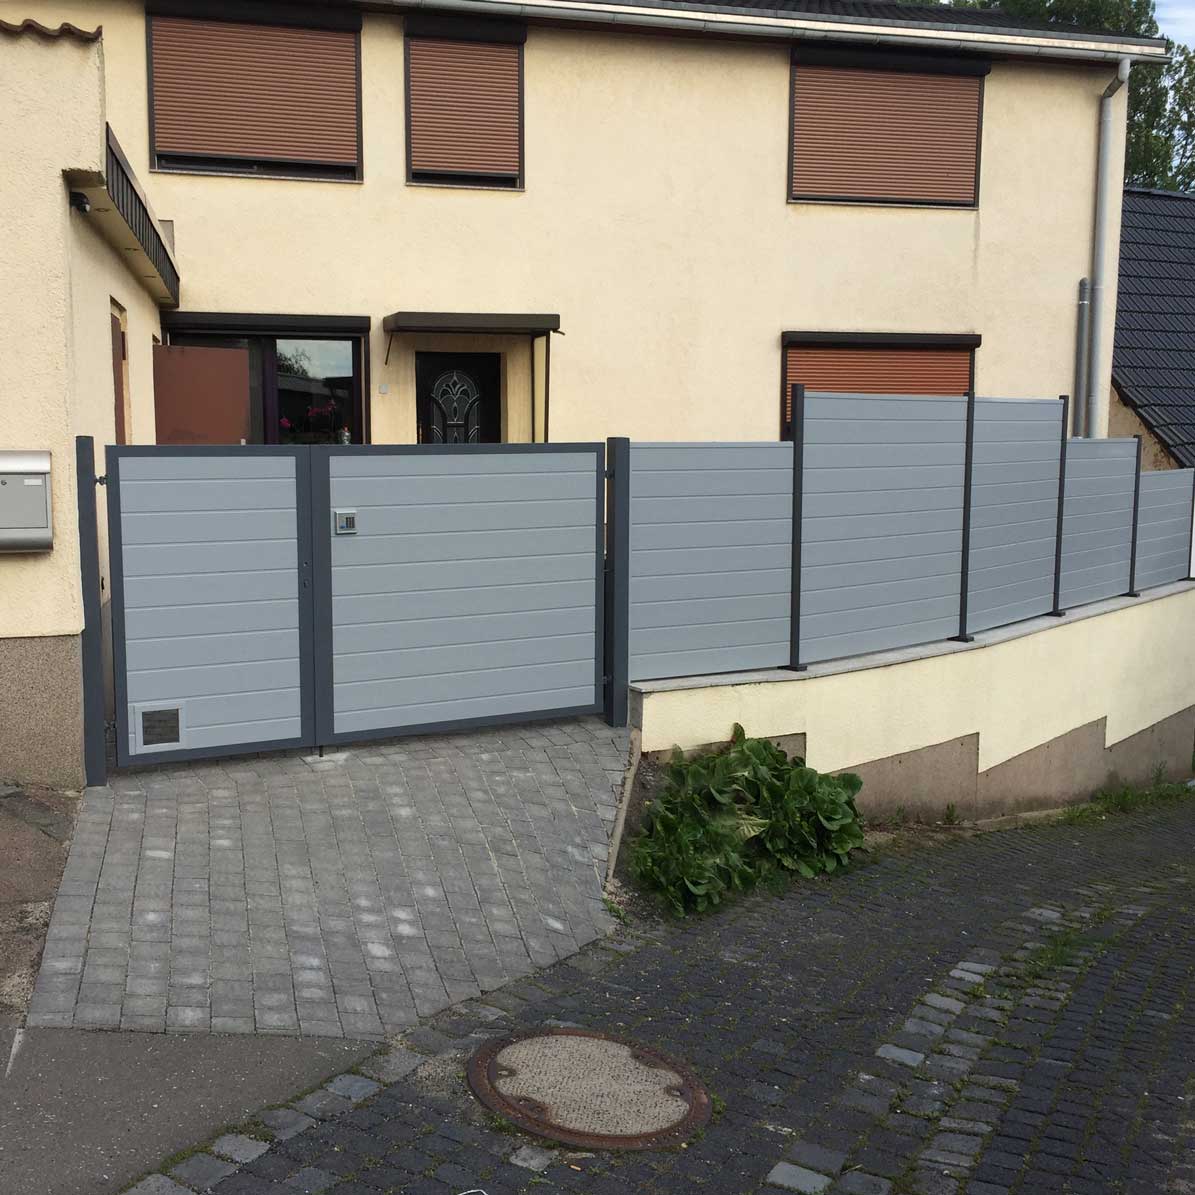 Sichtschutzzaun aus Kunststoff PVC in Grau und Anthrazit als Blickfang auf den Hof mit passendem Tor